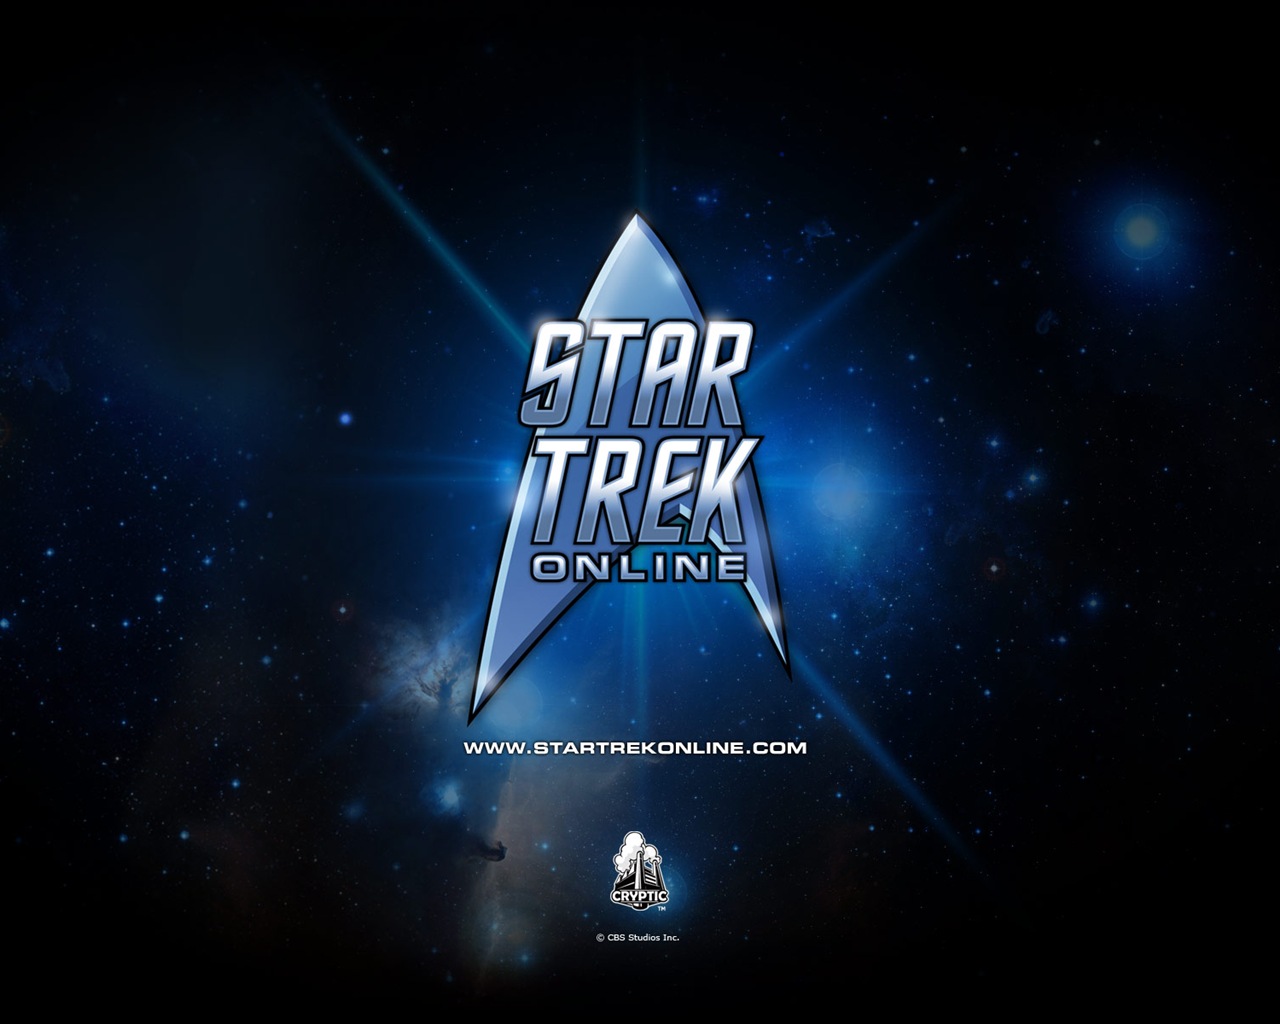 Star Trek Online 星际迷航在线 游戏高清壁纸19 - 1280x1024